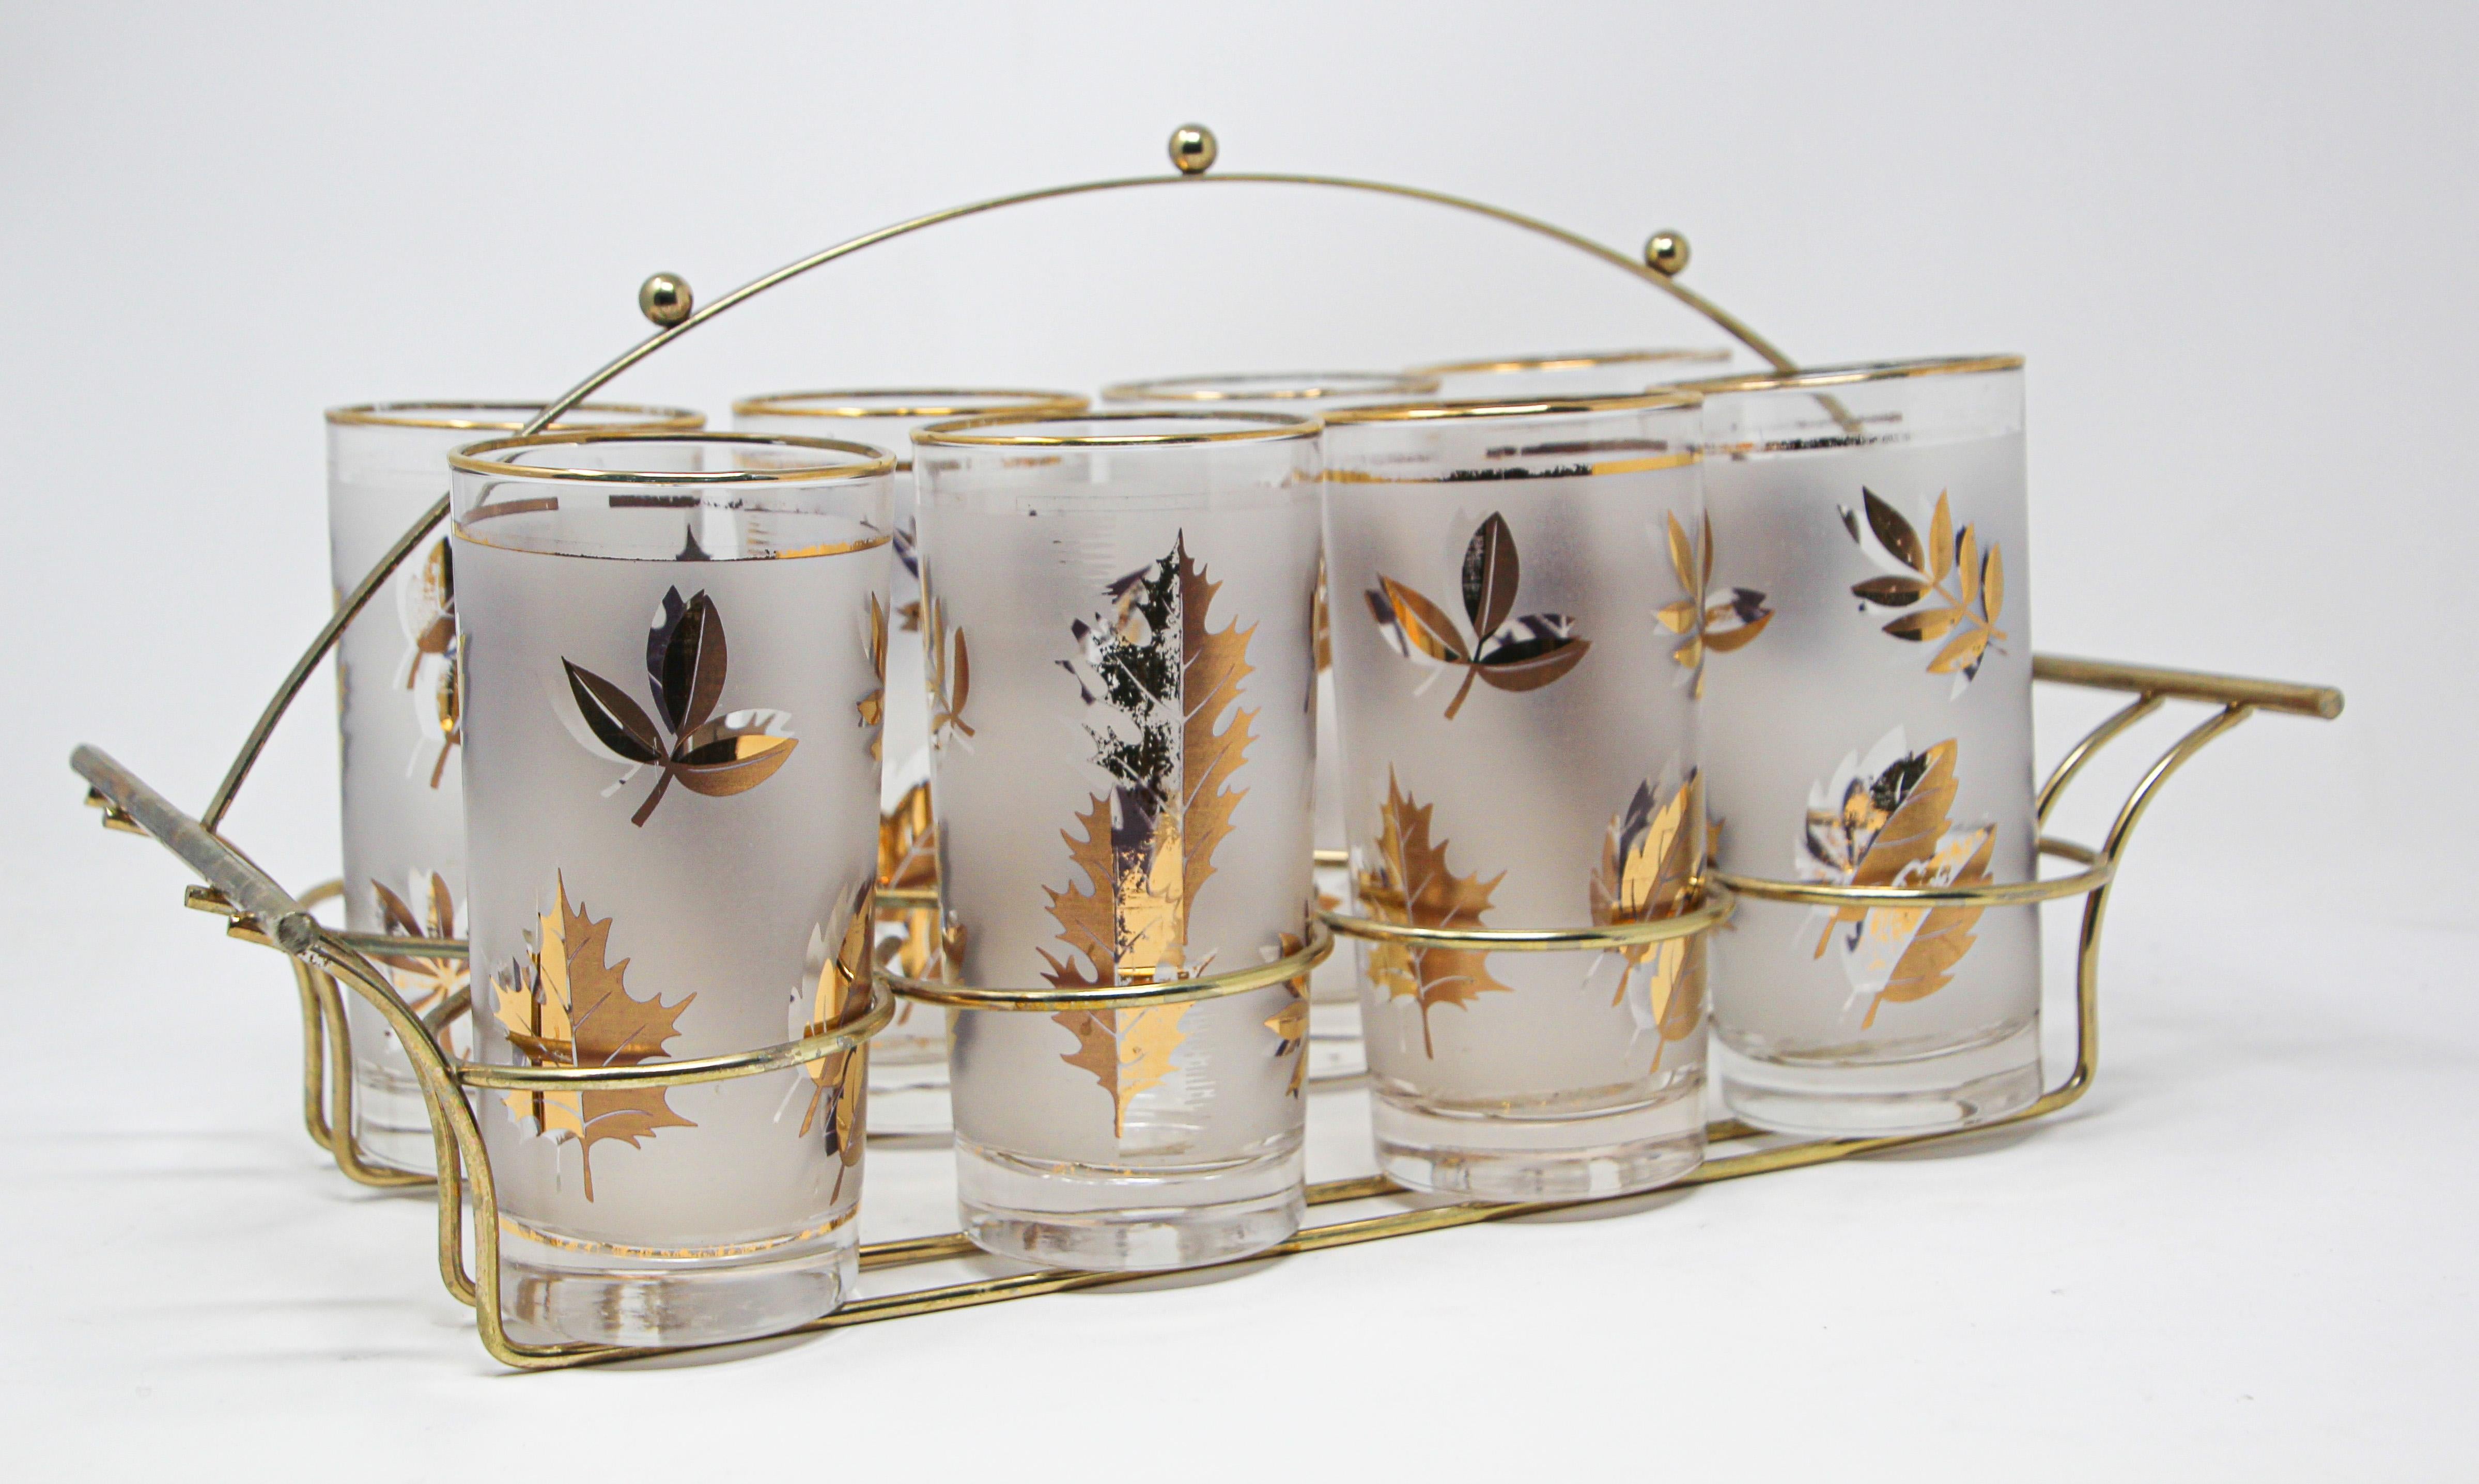 Élégant ensemble vintage exquis de huit verres Collins conçus par Libbey.
L'ensemble comprend huit verres highball dans un chariot en laiton poli avec poignée.
Les verres sont décorés de feuilles d'or.
Parfait état vintage, avec un motif de feuilles